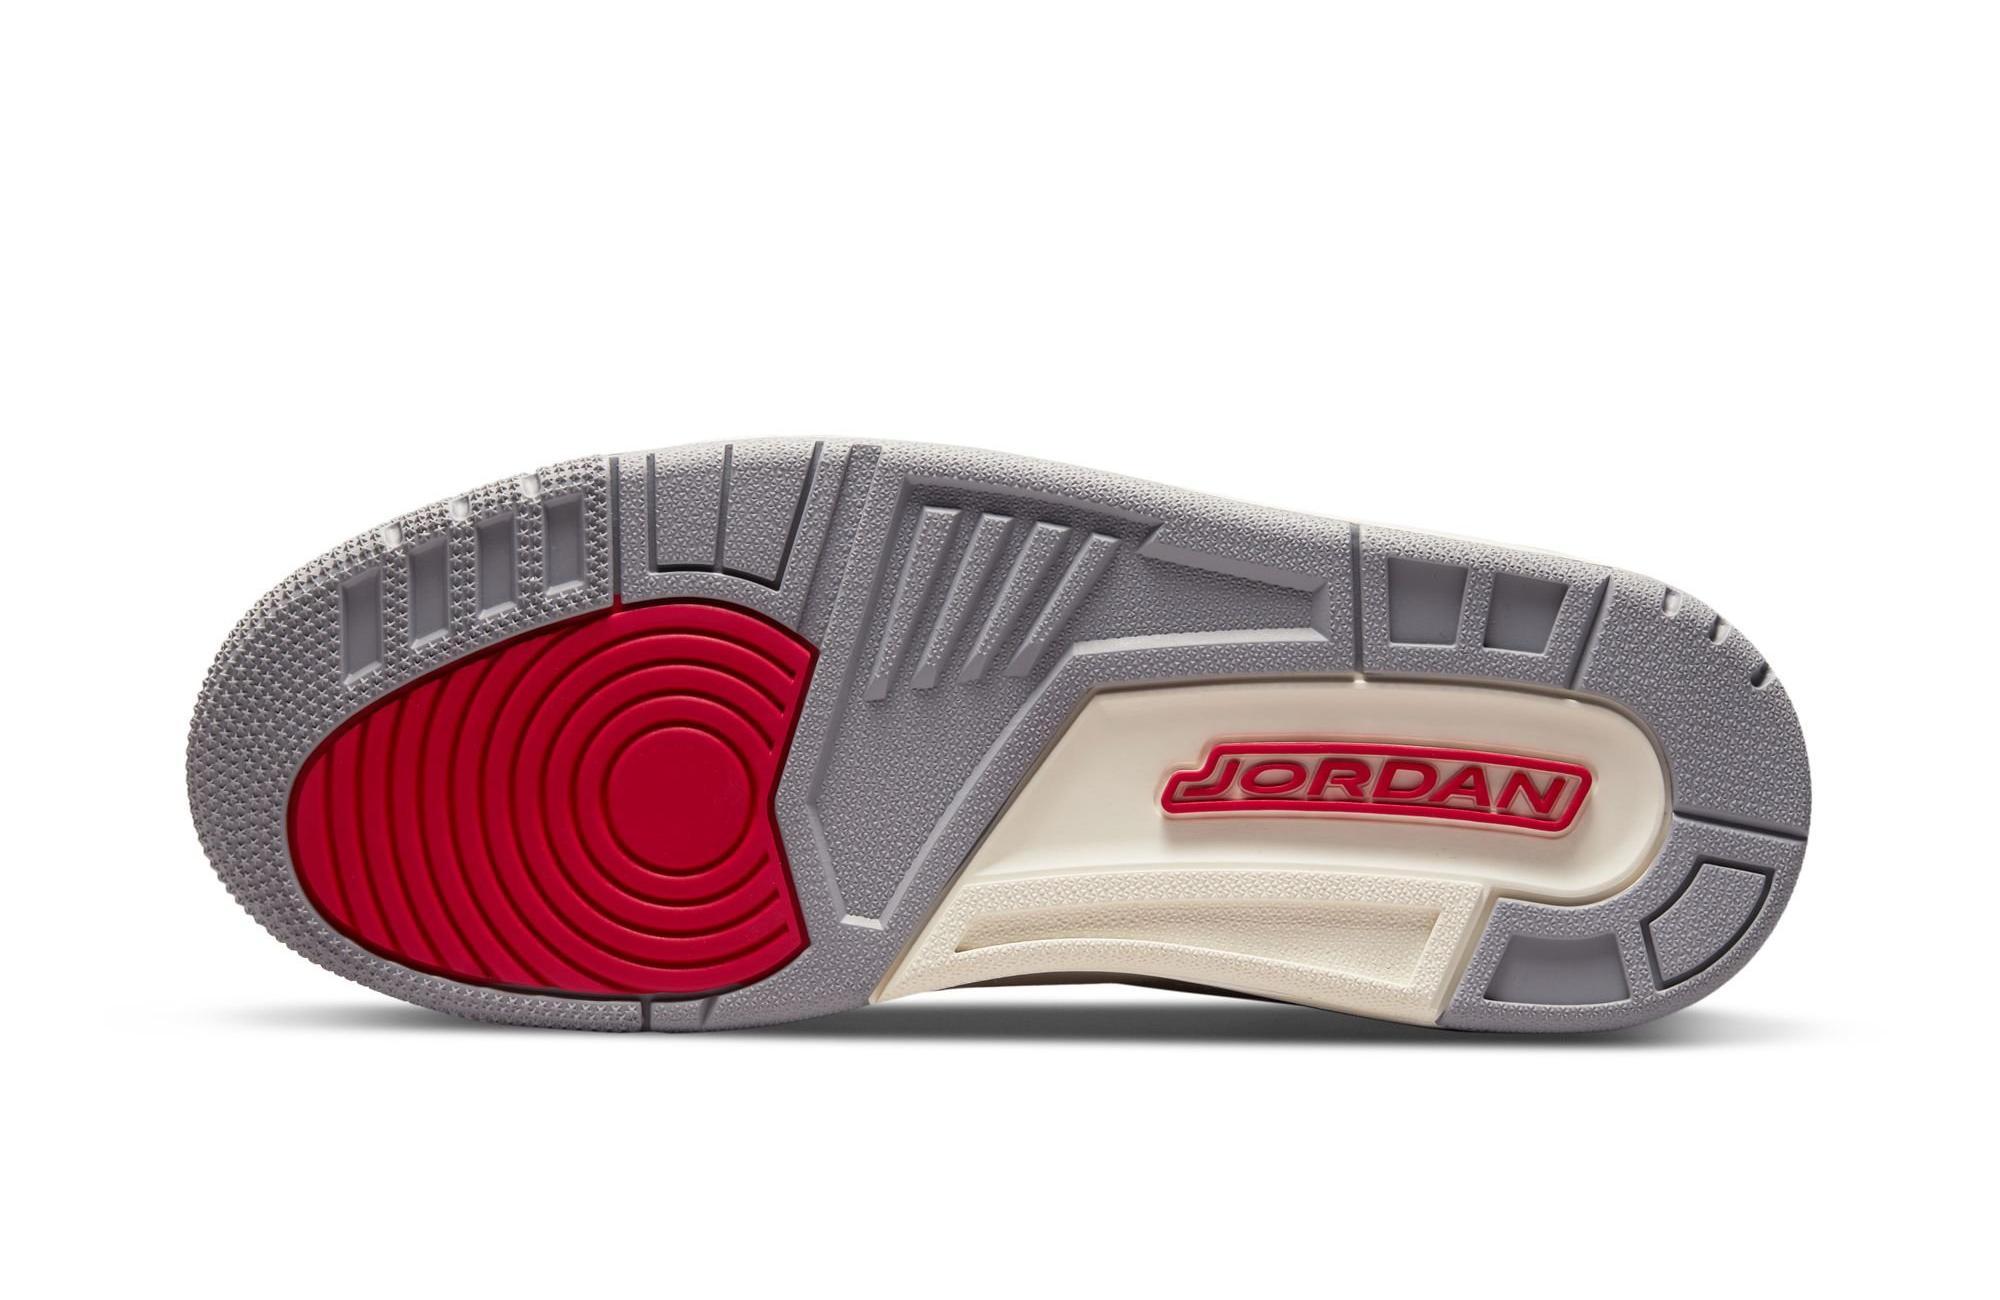 Sneakers Release – Jordan 3 Retro SE “Muslin” Men’s Shoe Dropping 3/25